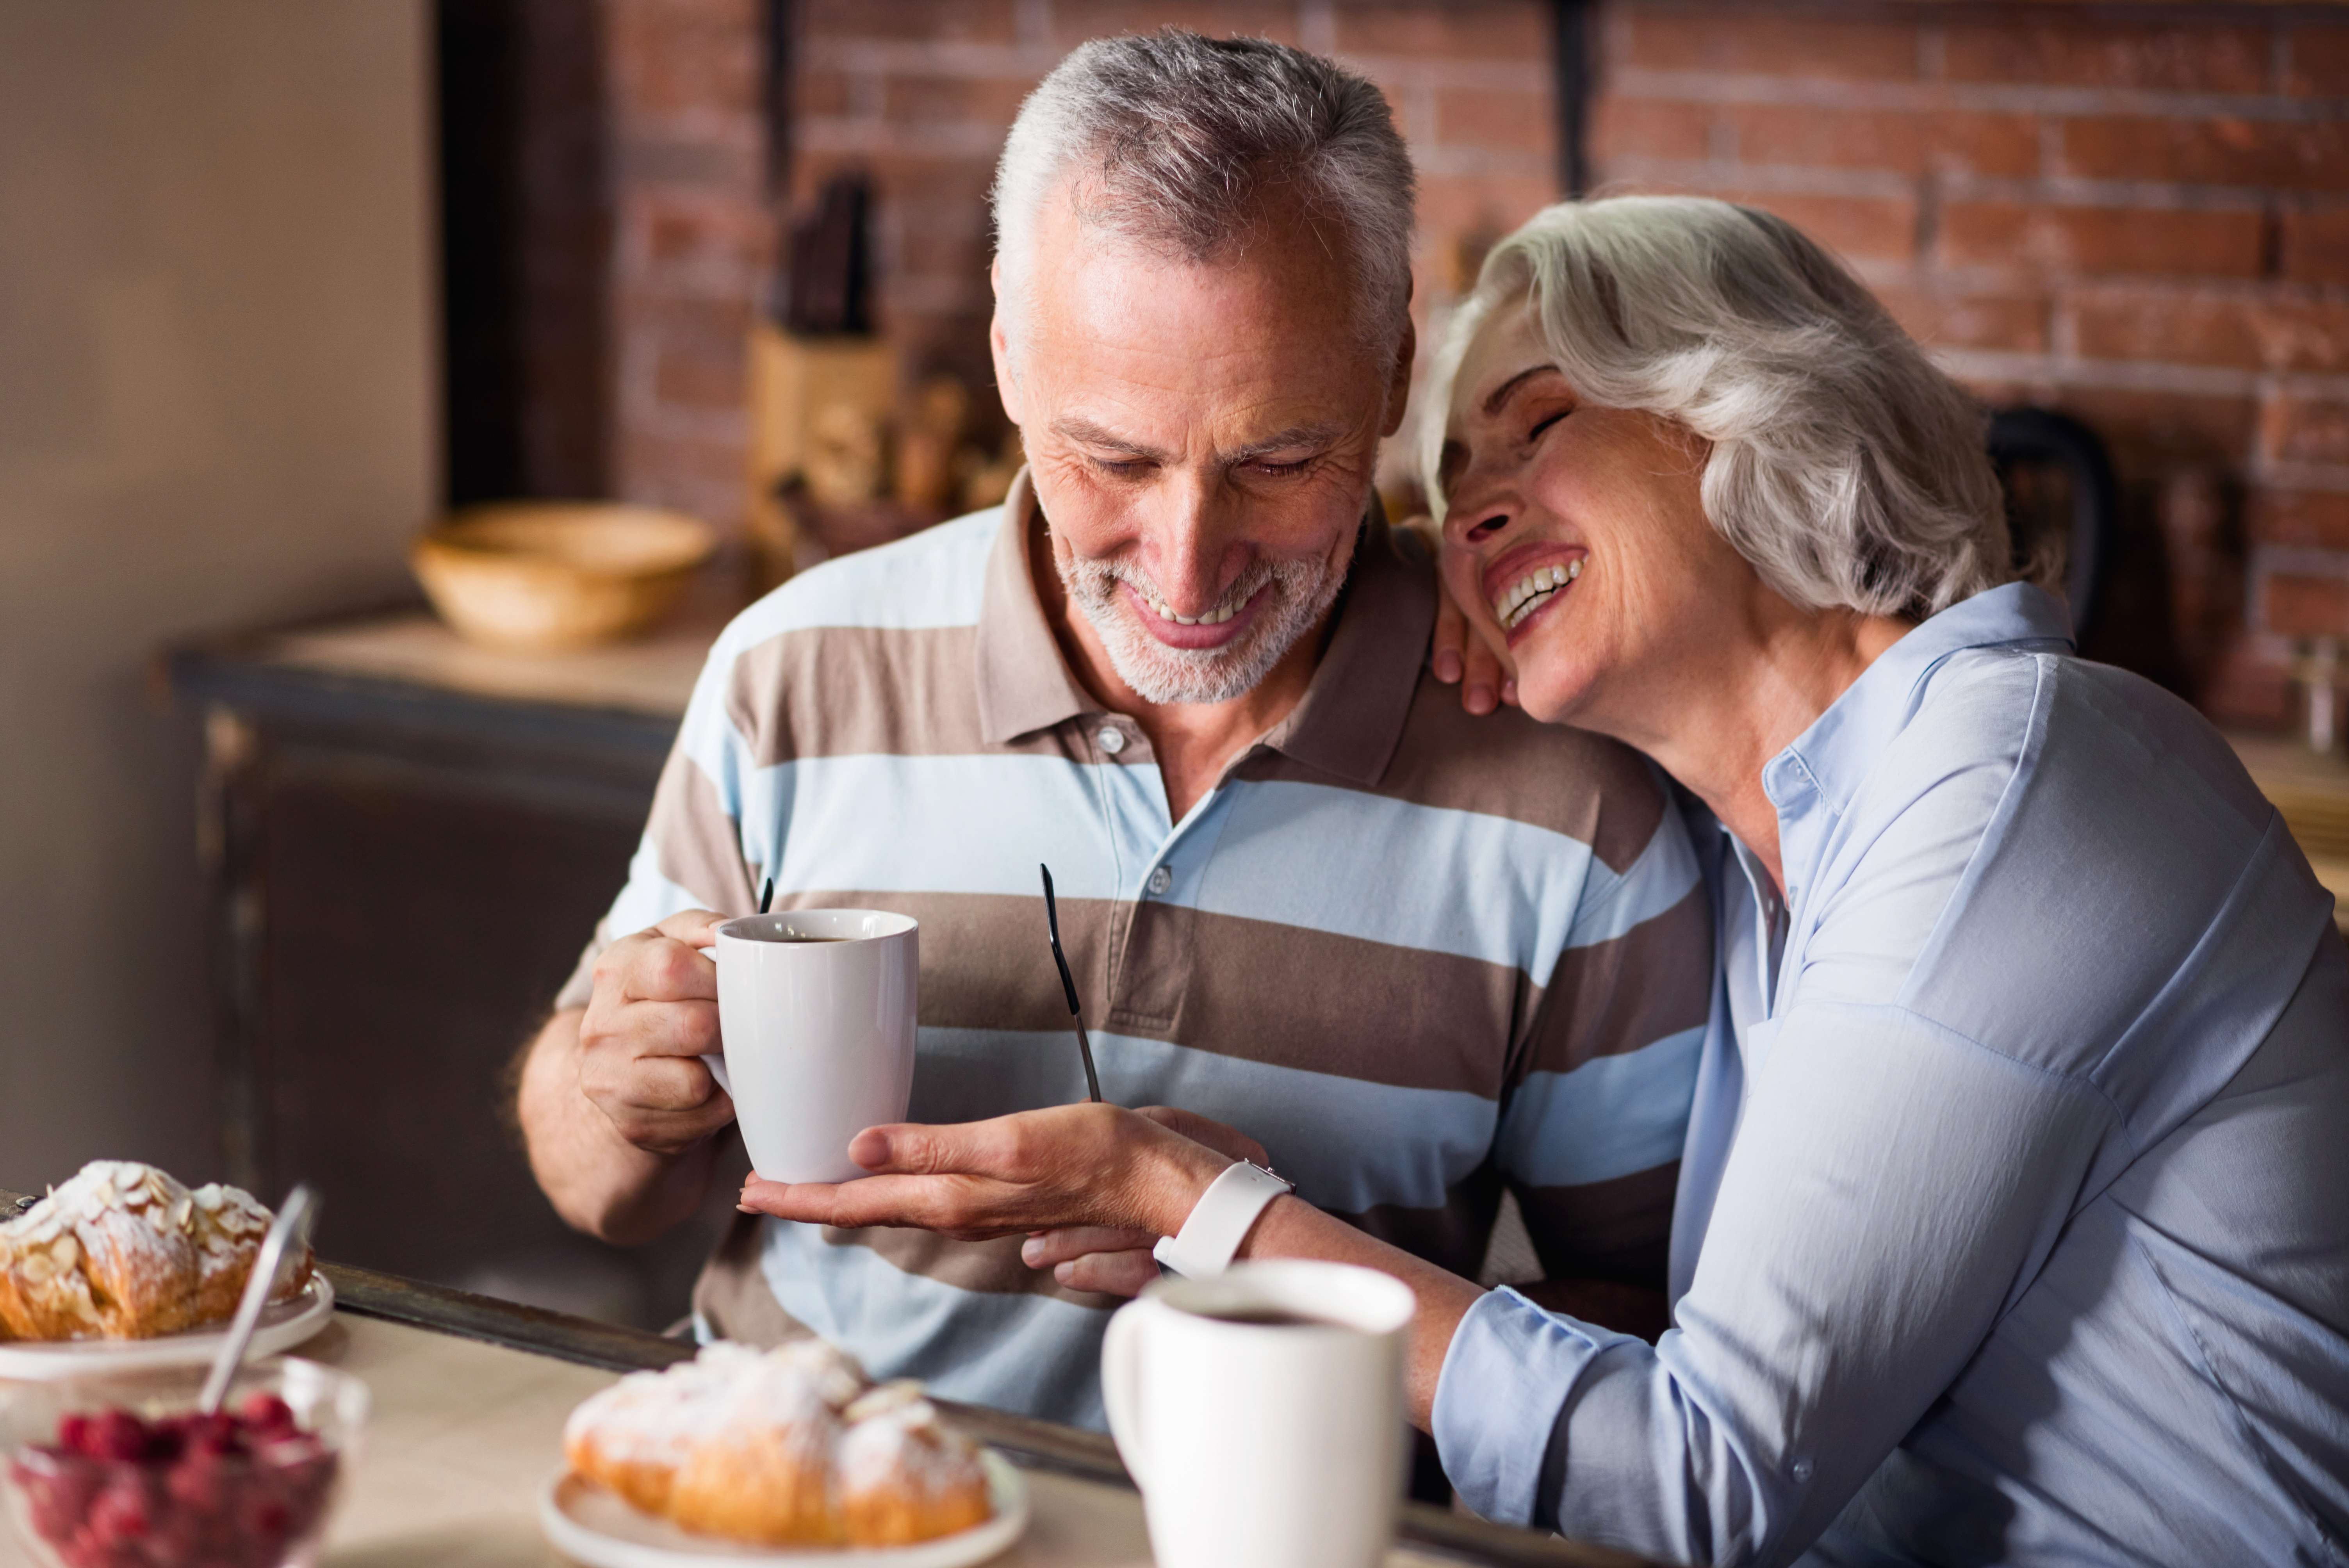 An elderly couple having coffee | Source: Shutterstock